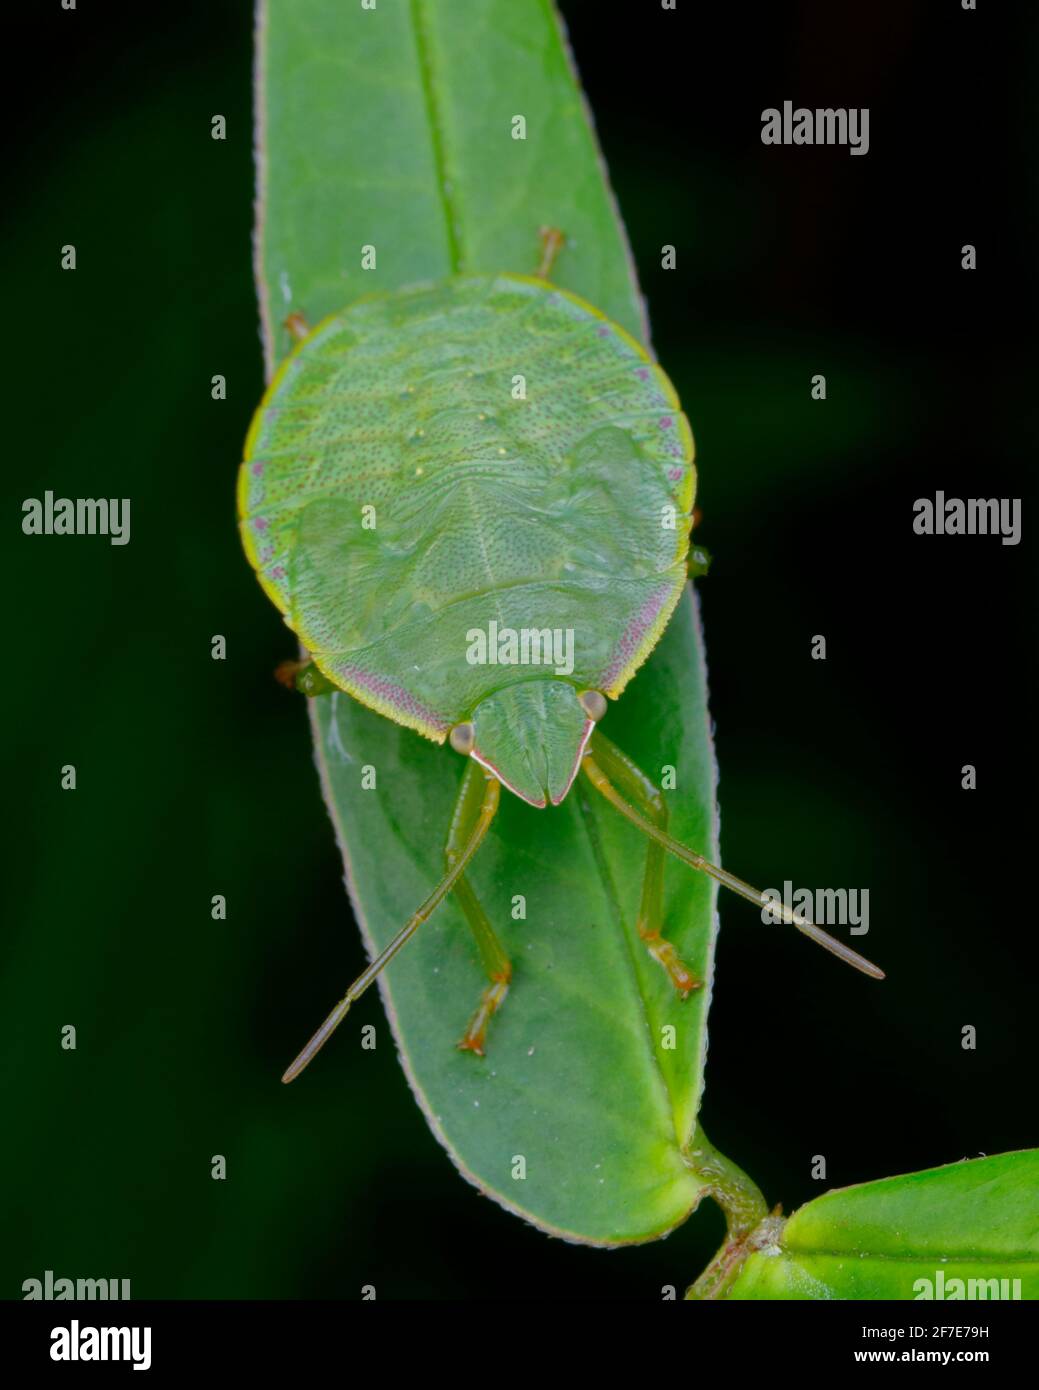 Ein Nymphenstadium stachelnder grüner Stinkwanze, Loxa flavicollis, kriecht auf einer Hülsenfrucht. Stockfoto